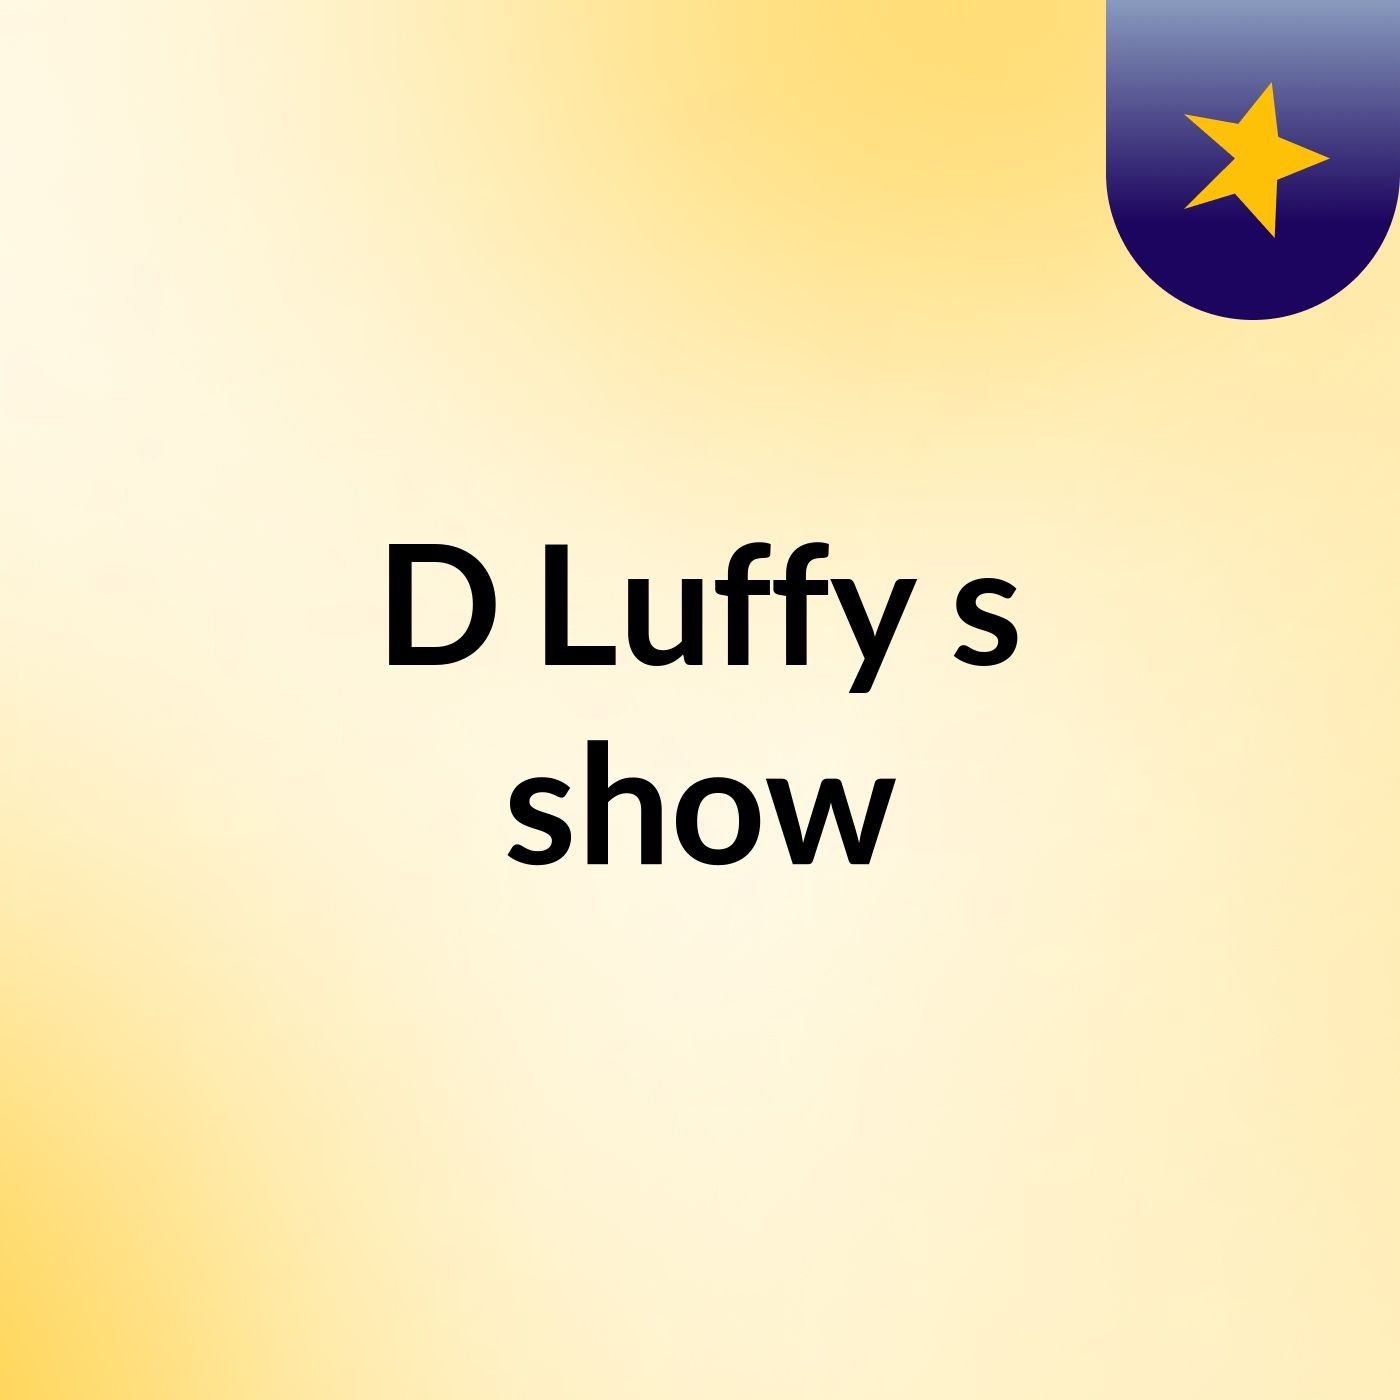 D Luffy's show